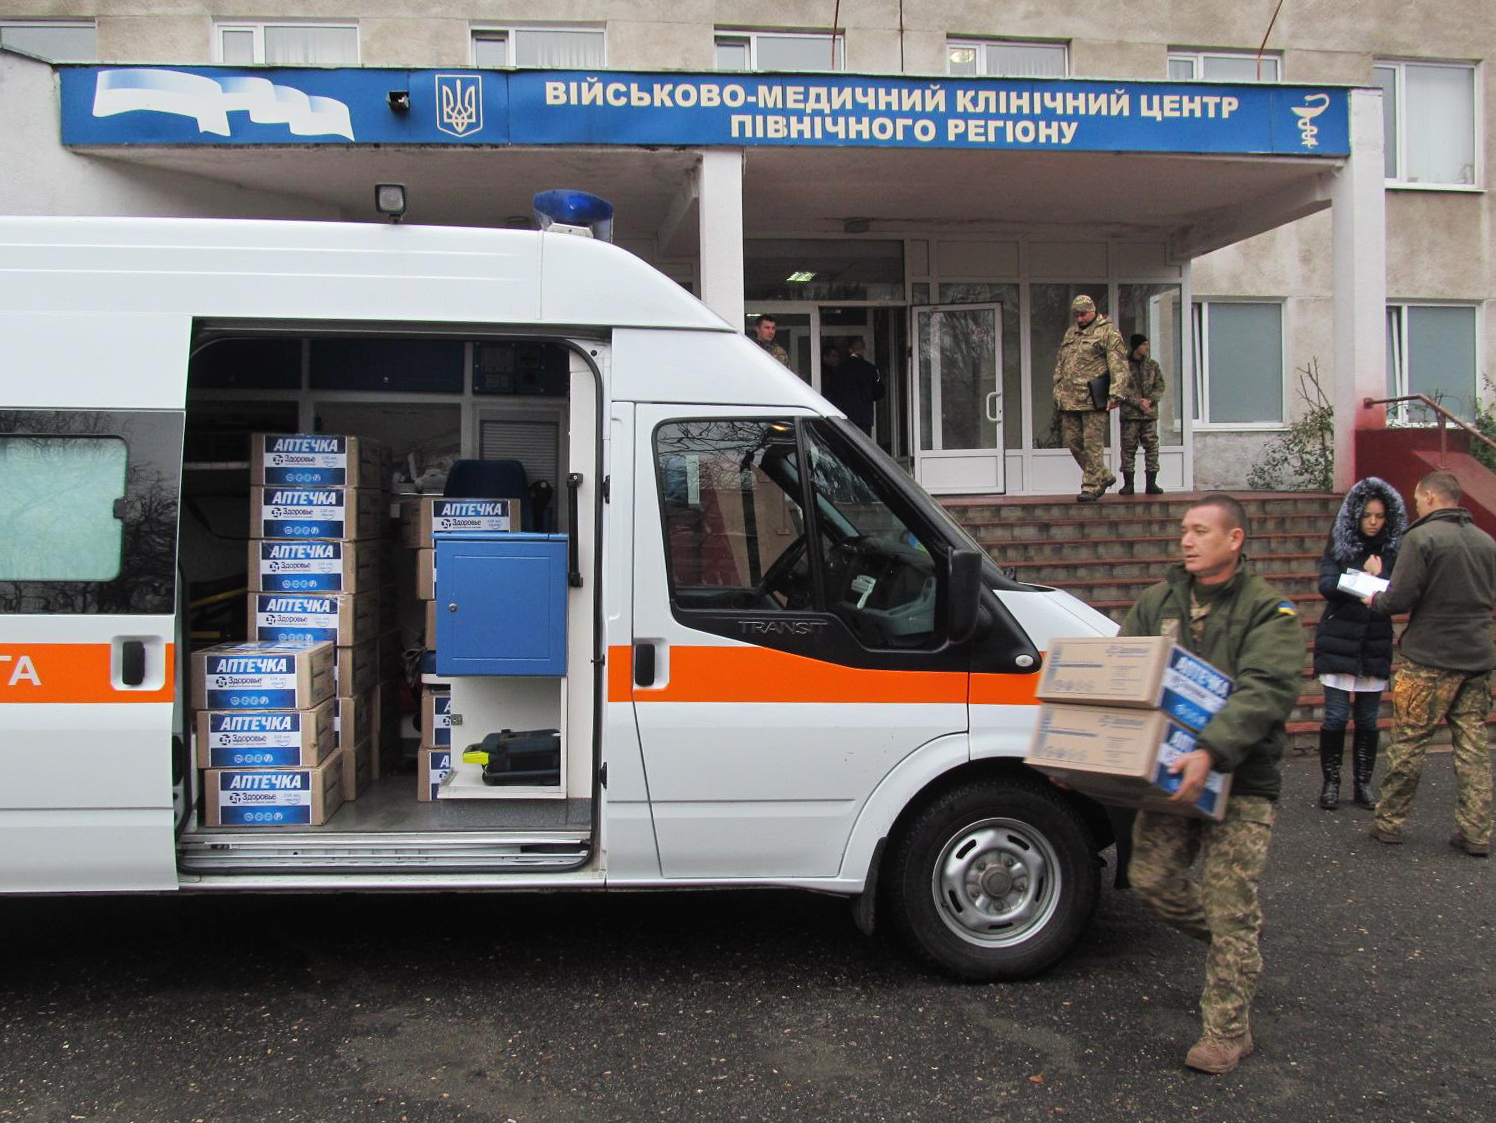 Ко Дню Вооруженных сил харьковский госпиталь получил помощь от компании "Здоровье"
